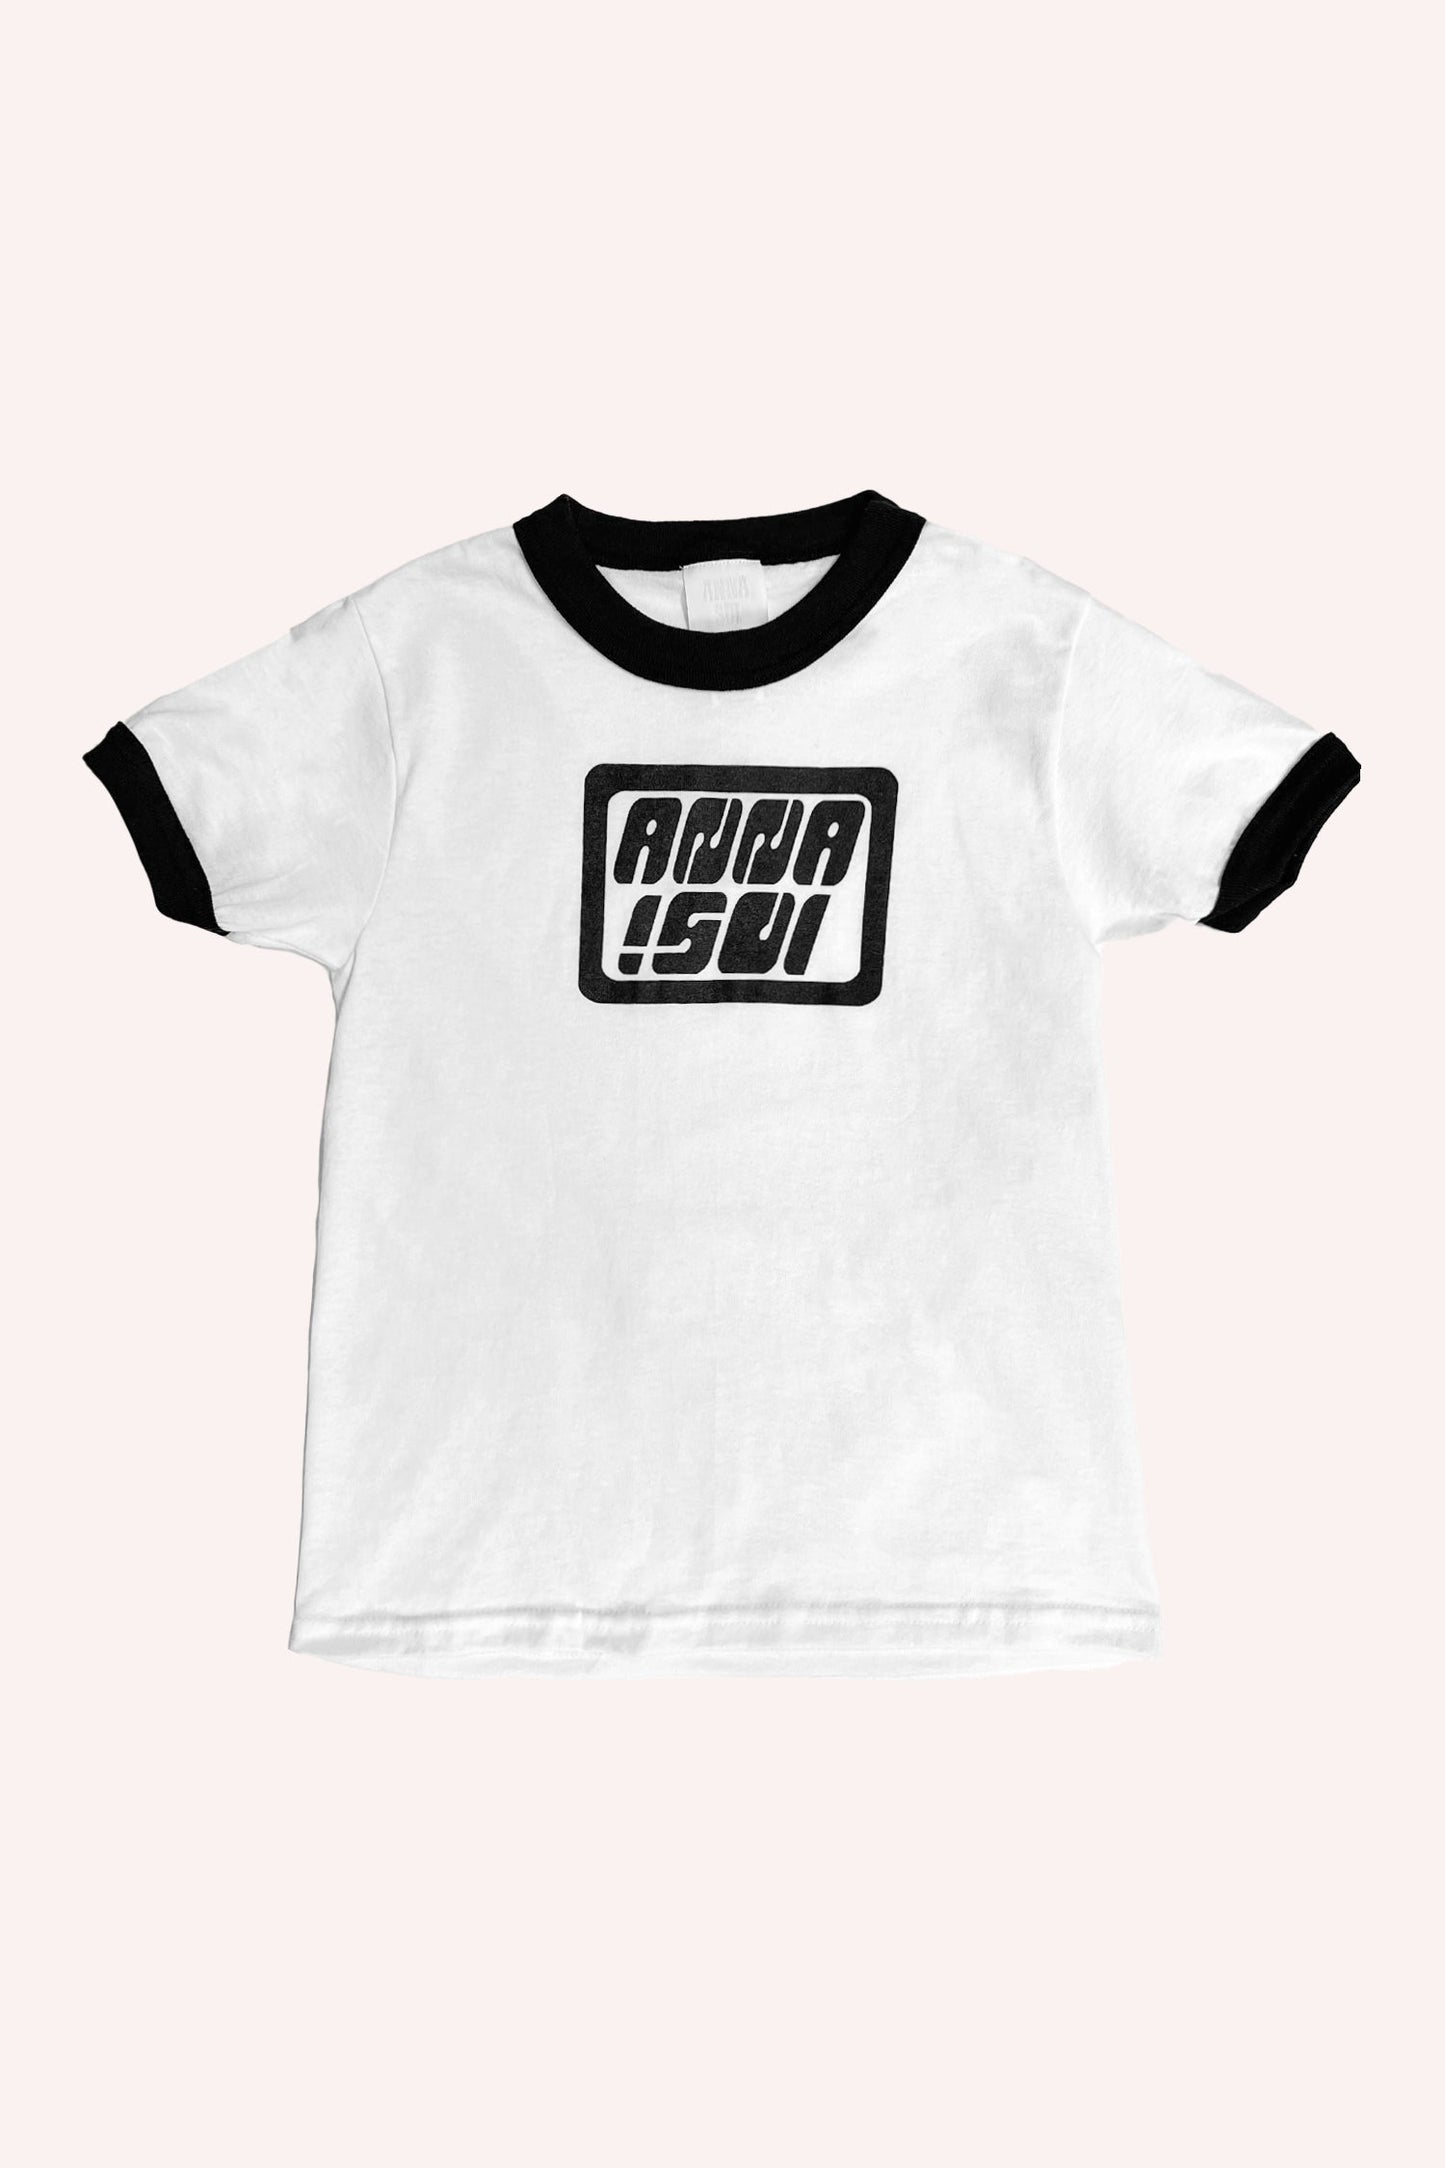 Anna Sui Ringer T 恤 黑色， 白色 T 恤，衣領和手臂黑色邊緣， Anna Sui 標誌正面